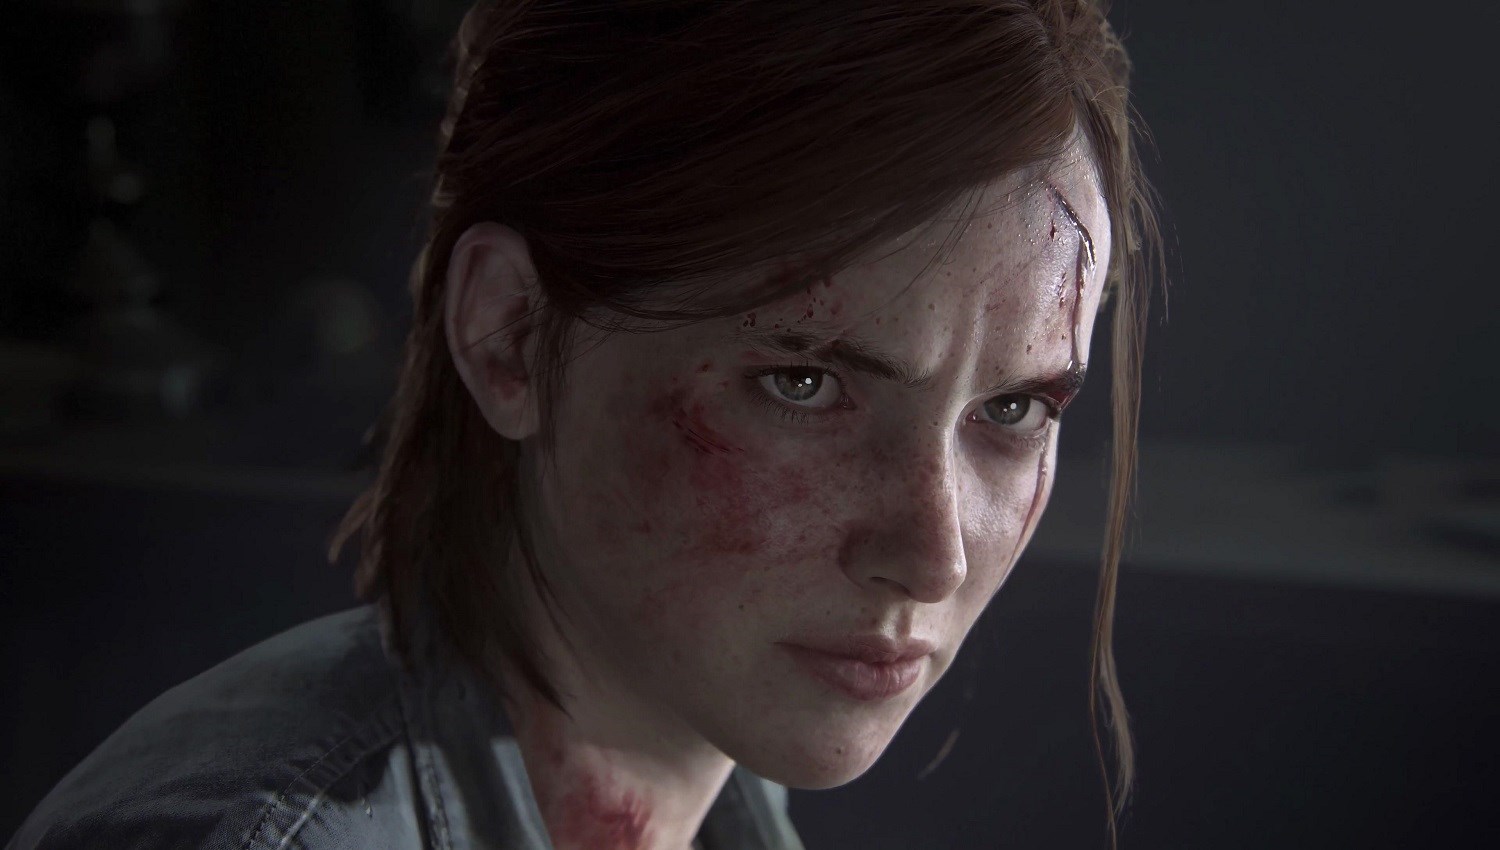 The Last of Us Part 2, satış rekorları kırarak piyasalara müthiş bir giriş yaptı